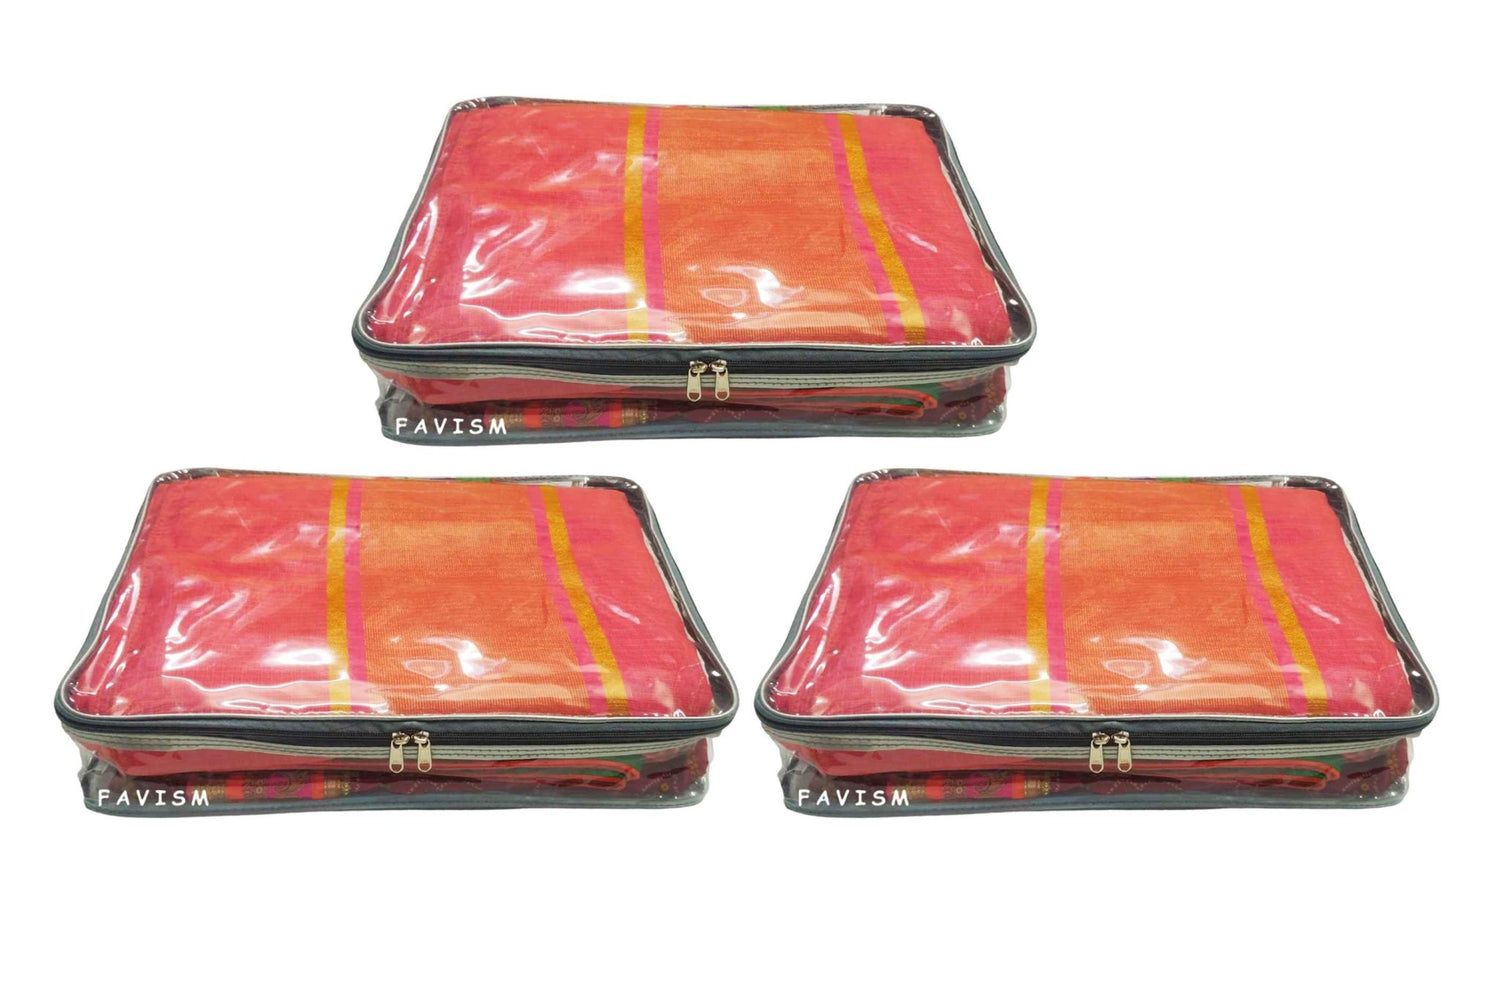 JaipurCrafts Saree Cover Full Transparent with Capacity of 10-15 Sarees  (Golden Lace)